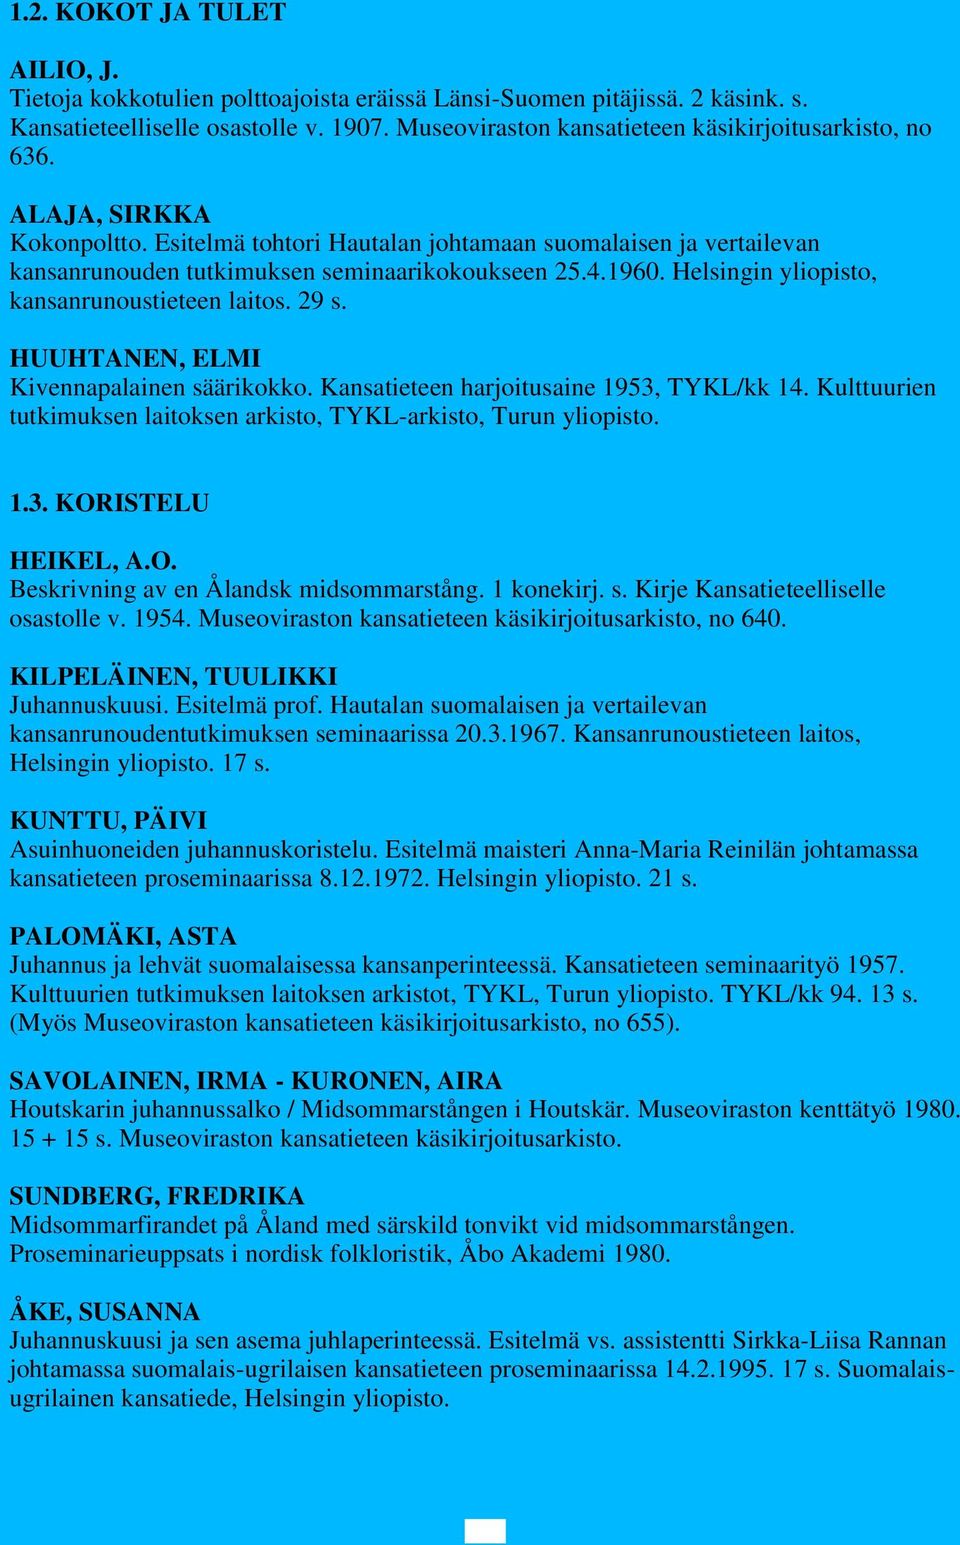 1960. Helsingin yliopisto, kansanrunoustieteen laitos. 29 s. HUUHTANEN, ELMI Kivennapalainen säärikokko. Kansatieteen harjoitusaine 1953, TYKL/kk 14.